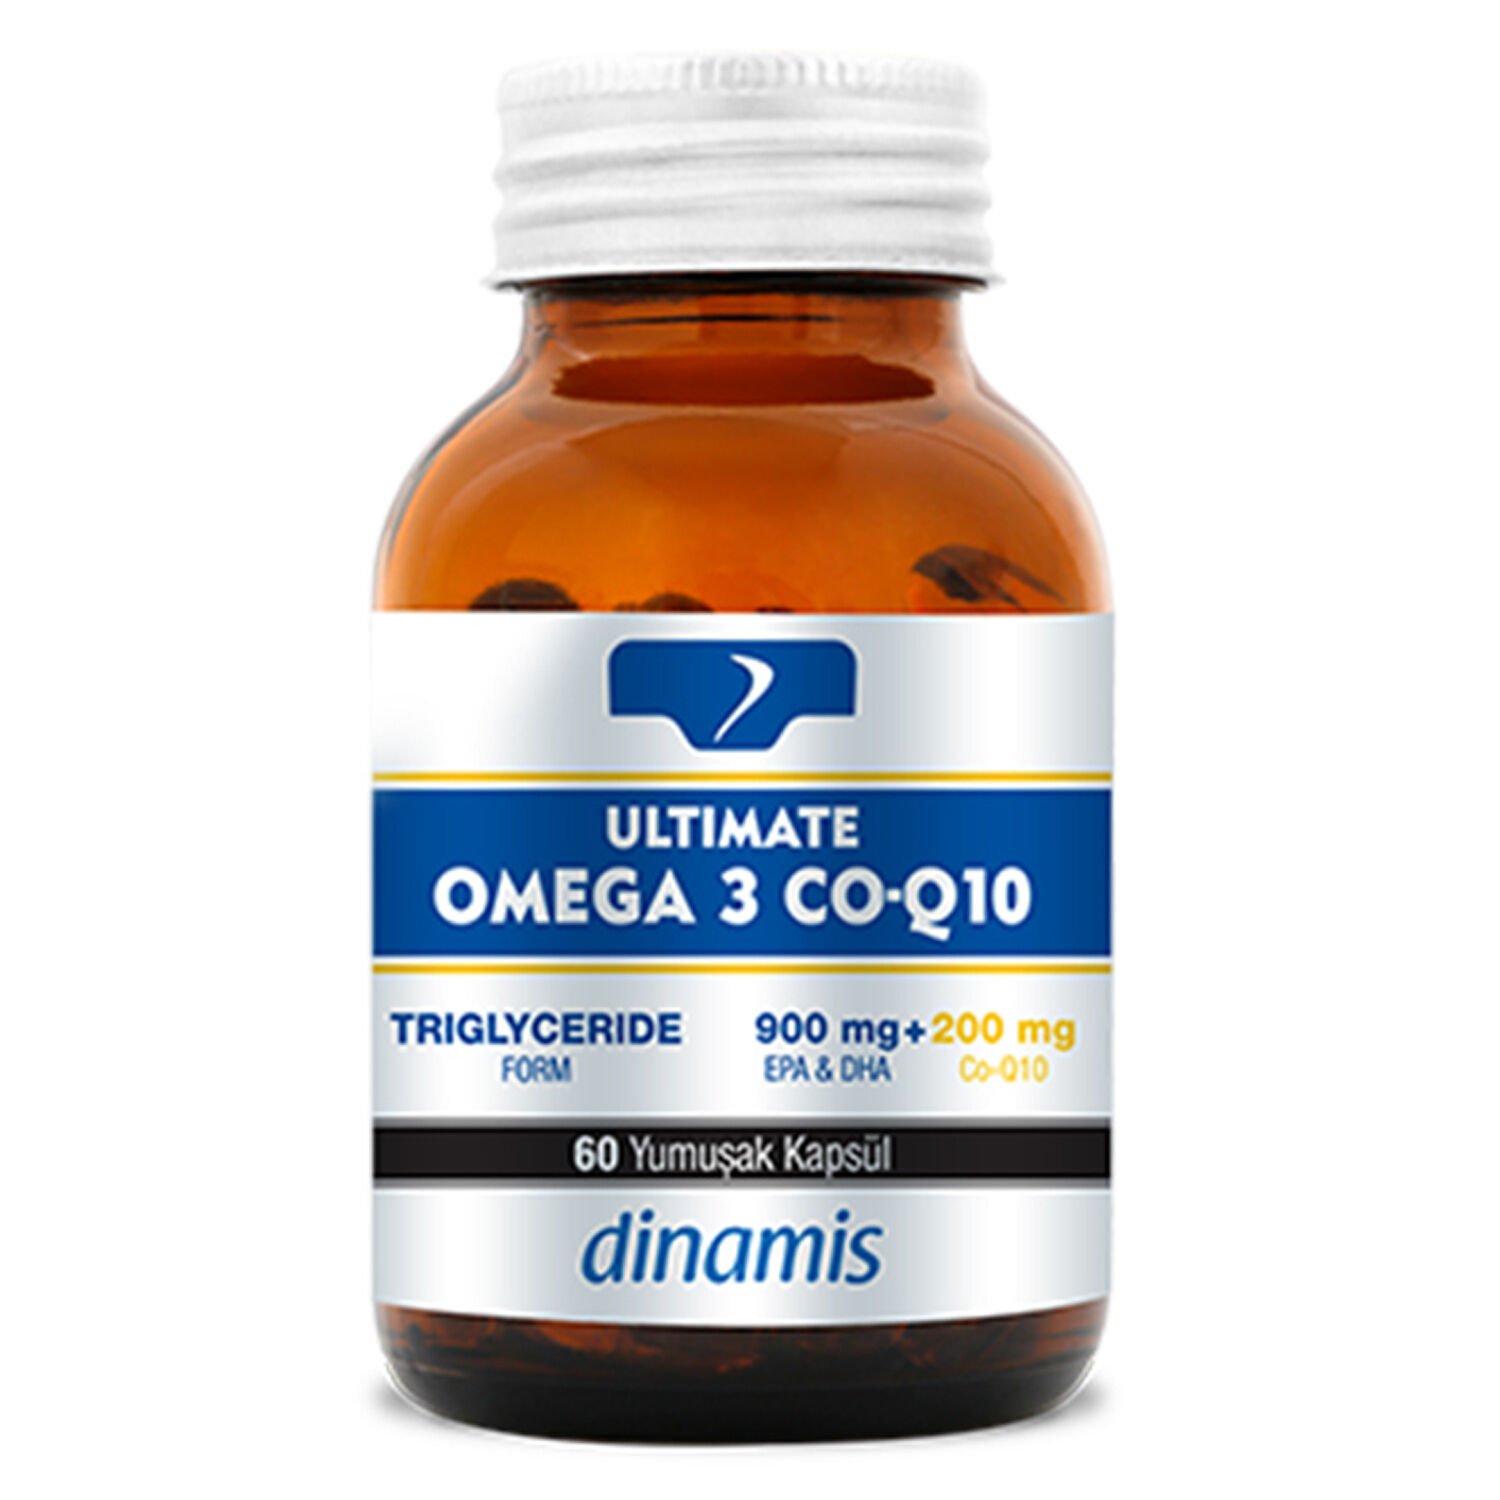 Dinamis Ultimate Omega 3 Co-Q10 İçeren Takviye Edici Gıda 60 Yumuşak Kapsül